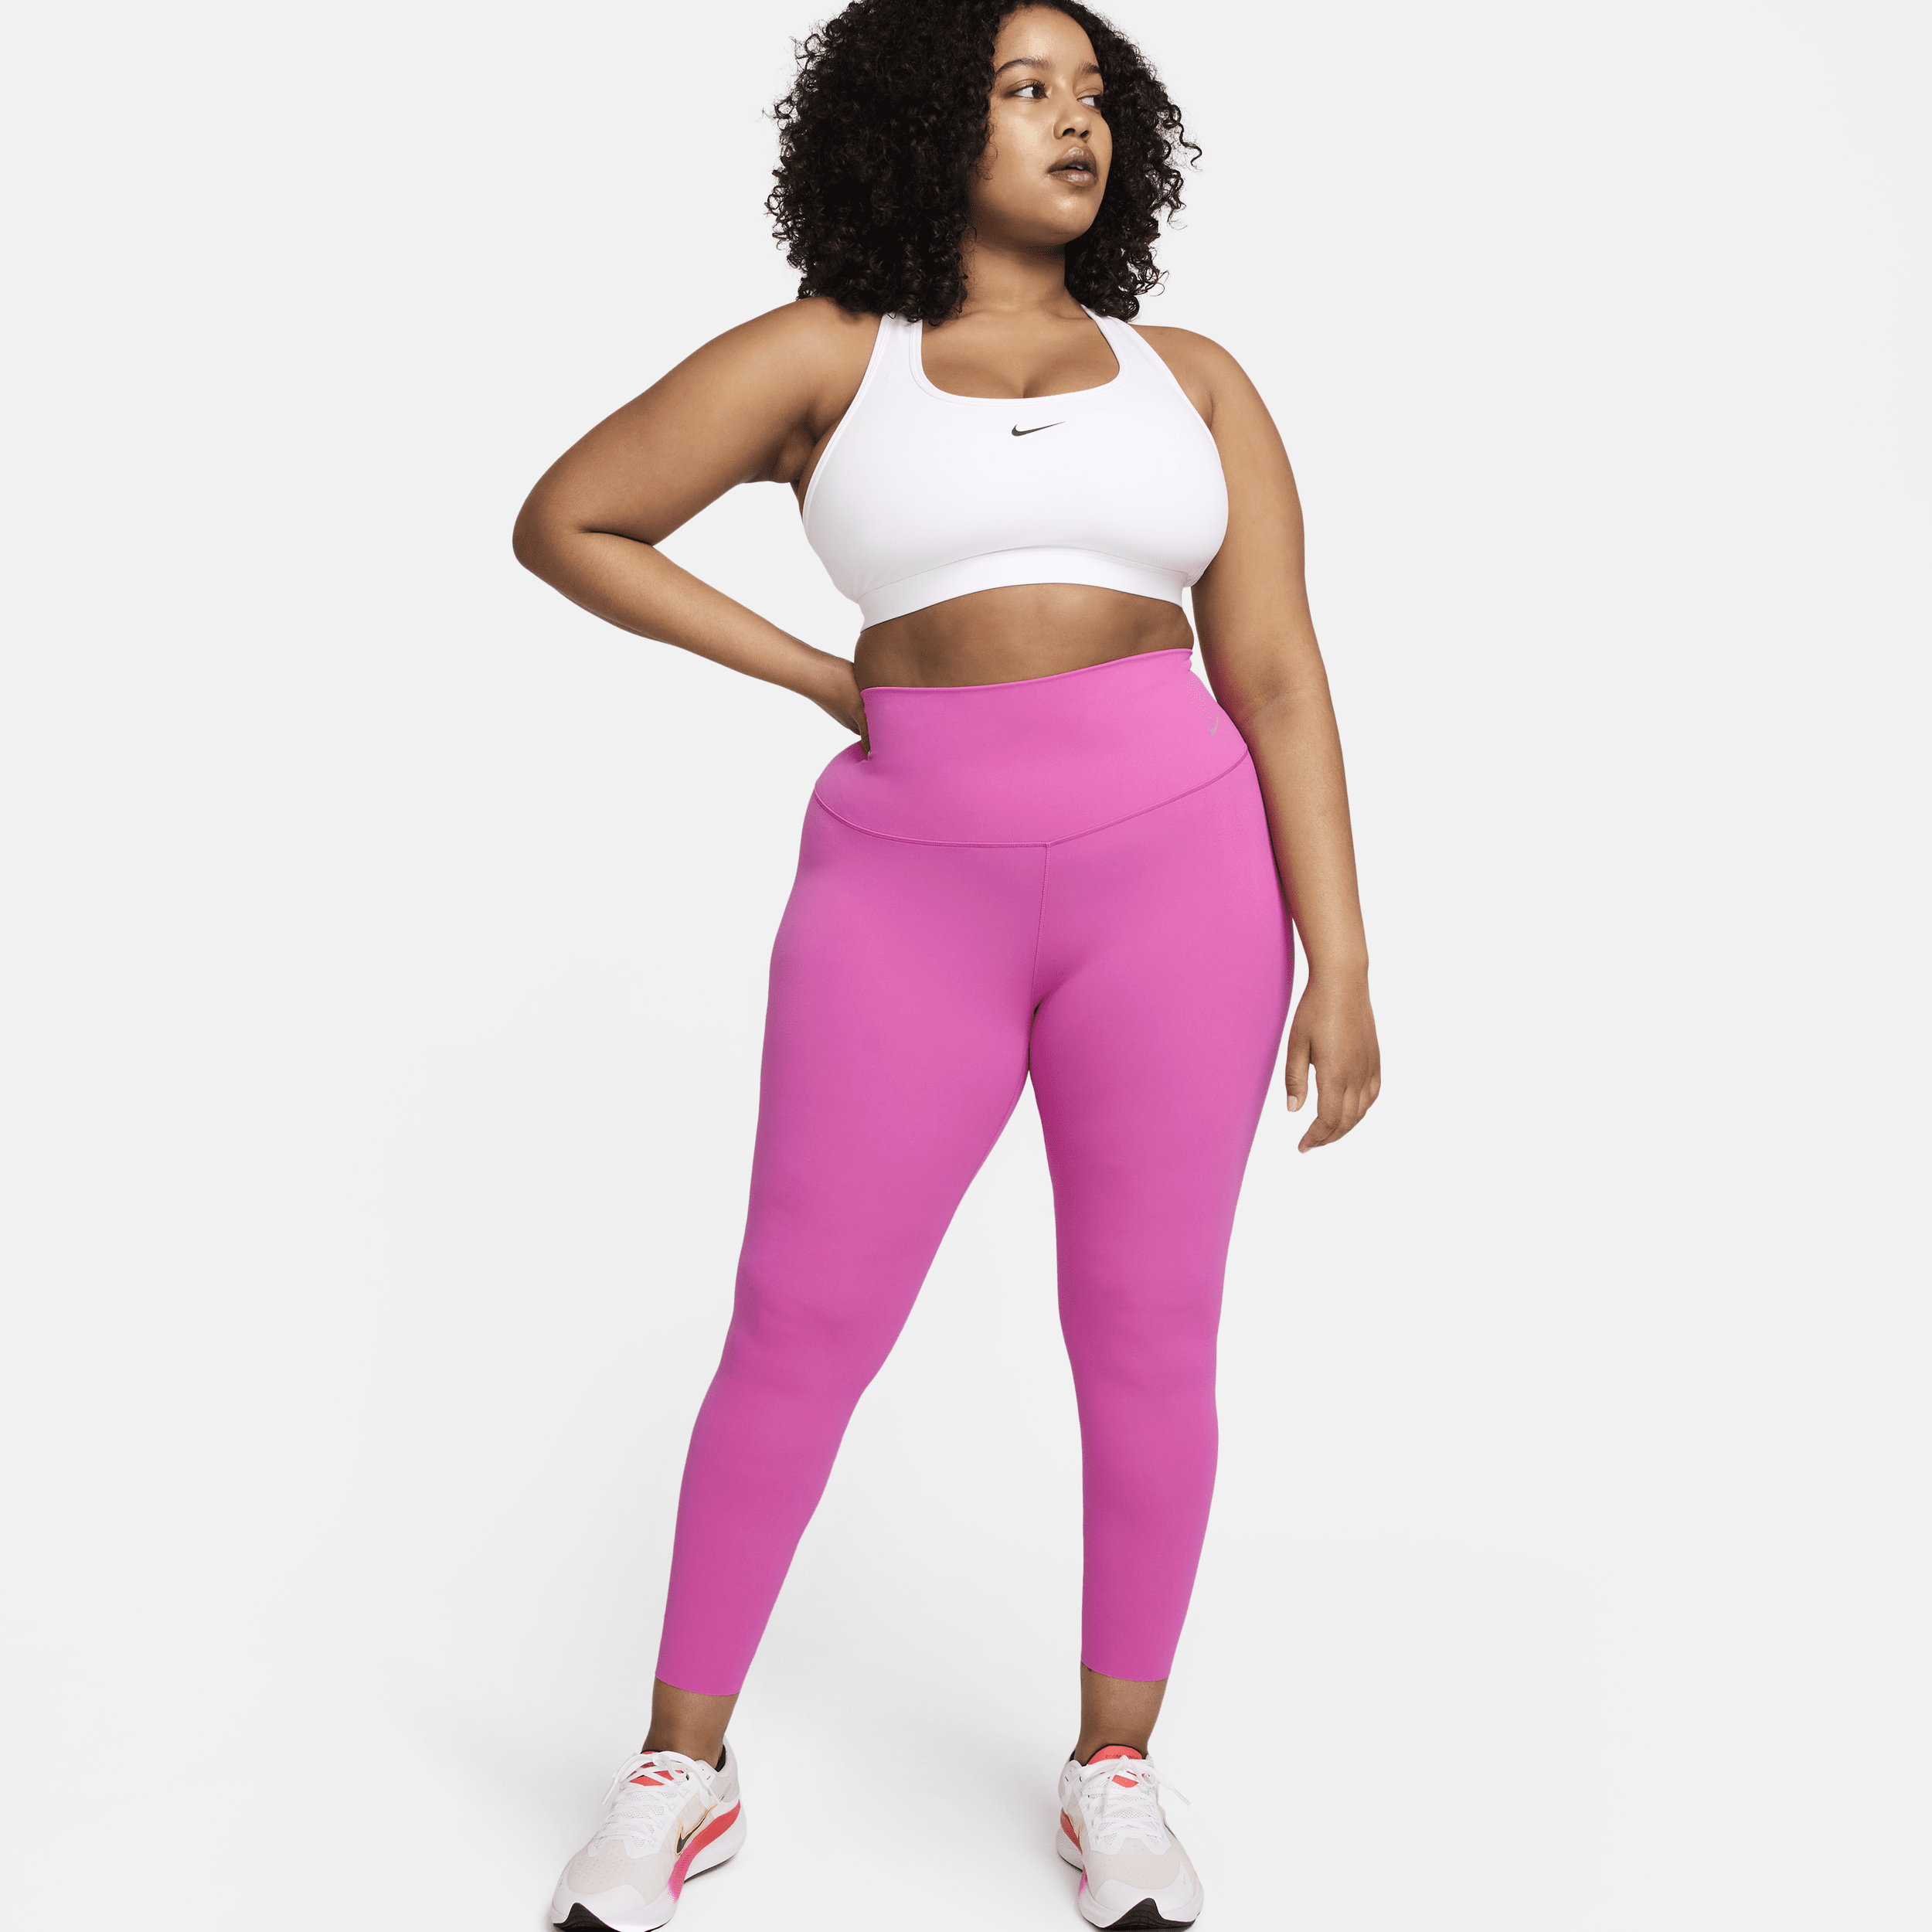 Nike Zenvy-leggings i 7/8-længde med høj talje og let støtte til kvinder - Pink